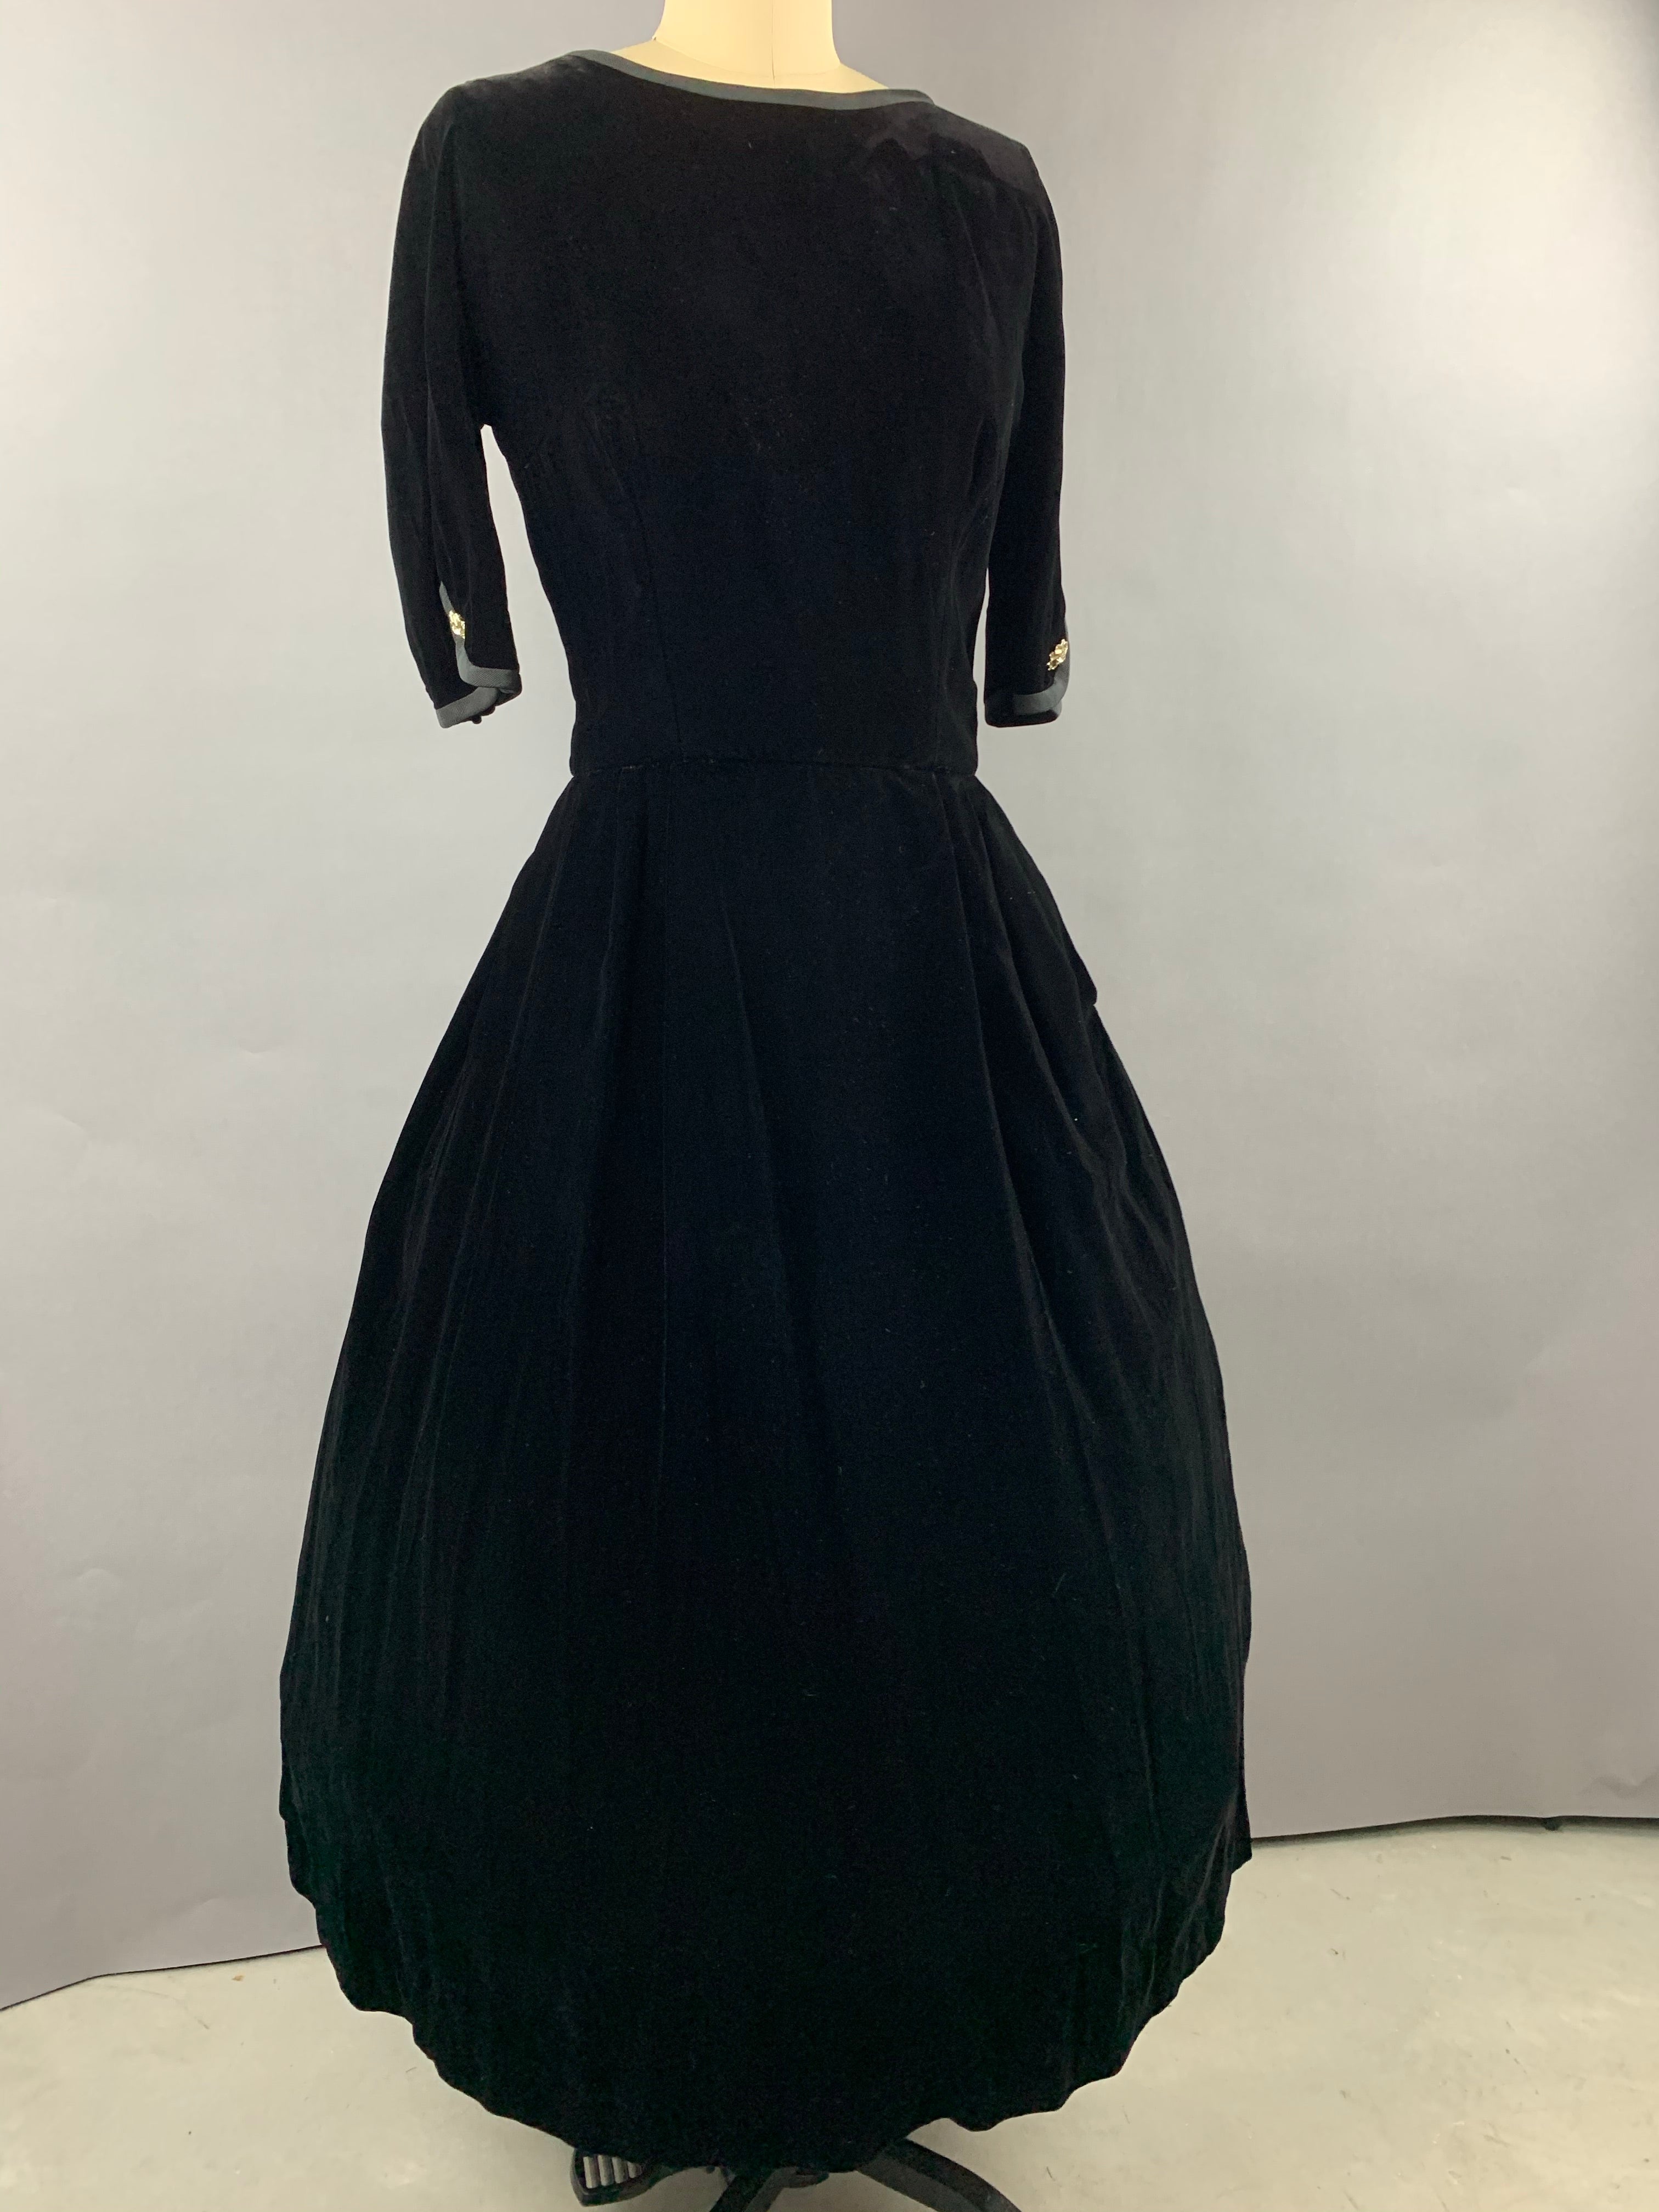 Late 1940s Early 1950s Hattie Carnegie Black Velvet Party Dress Size M